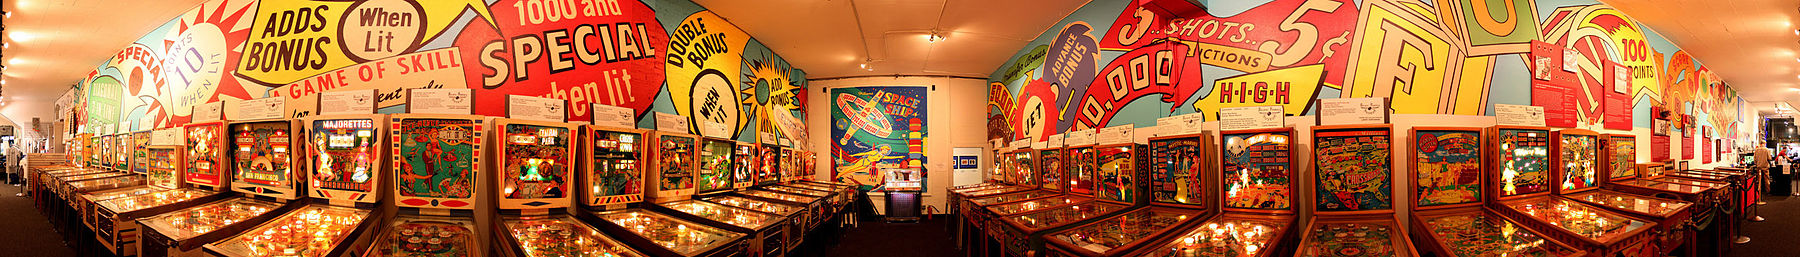 Alameda banner Pacific Pinball Museum.jpg